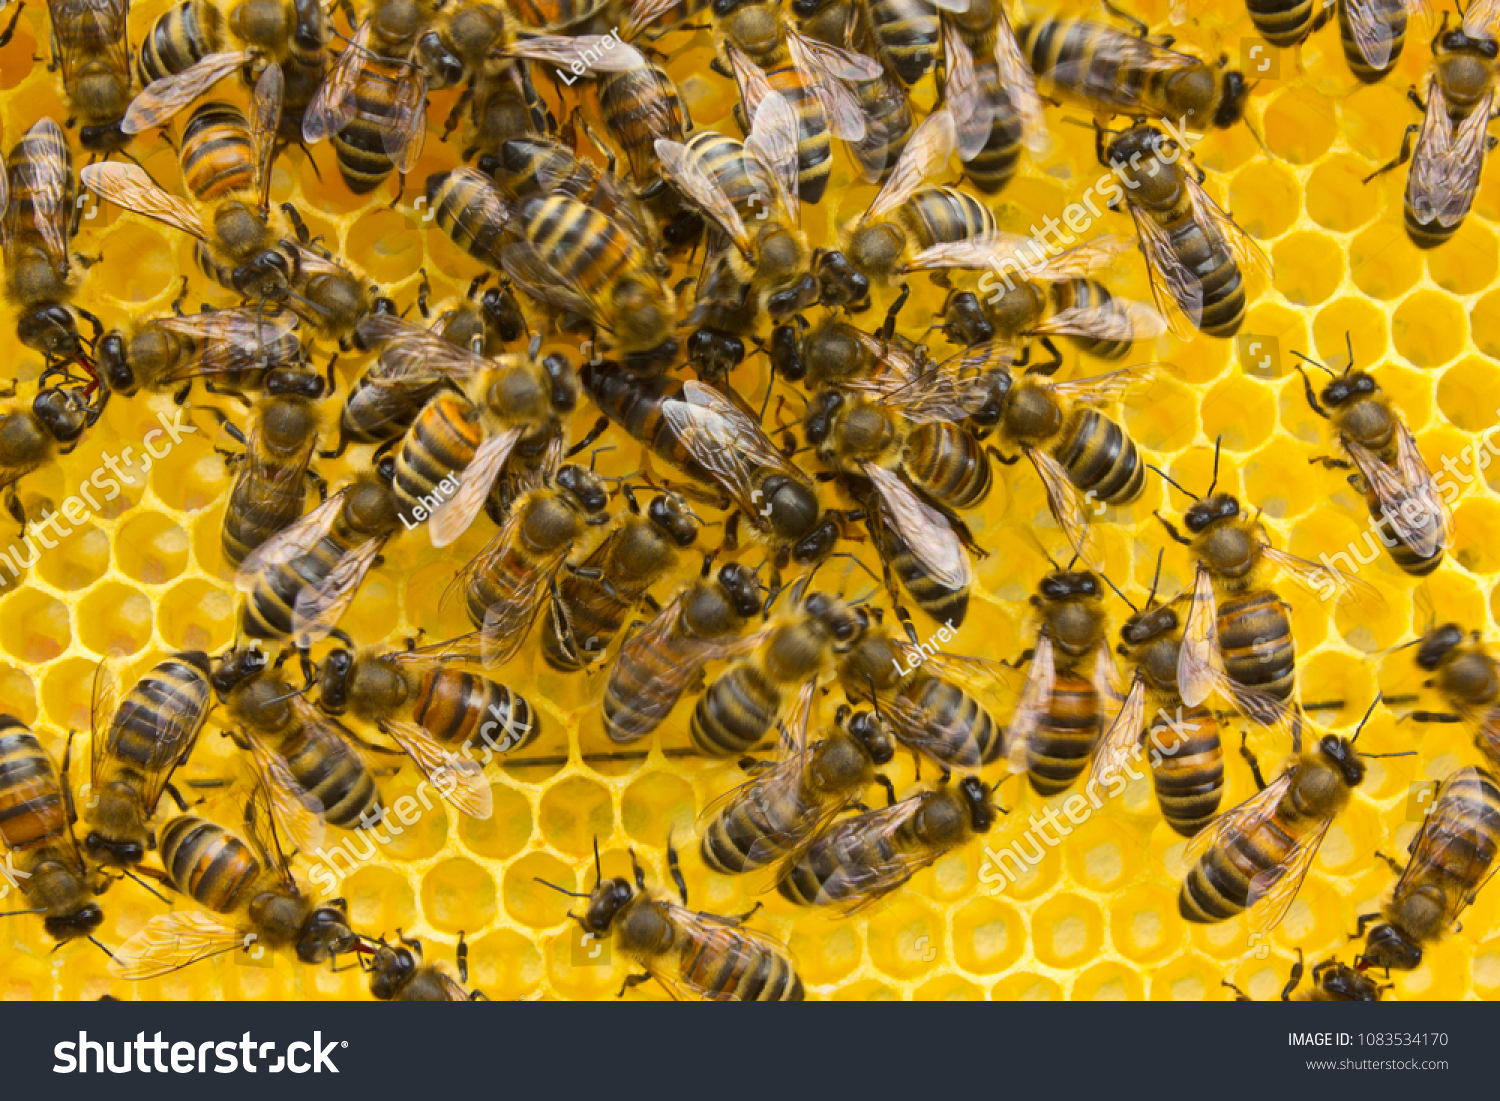 Какие отношения между крапивницей и пчелой. Королева пчел. Кокон королевы пчел. Пчелы выложили красивые соты. Апизан.